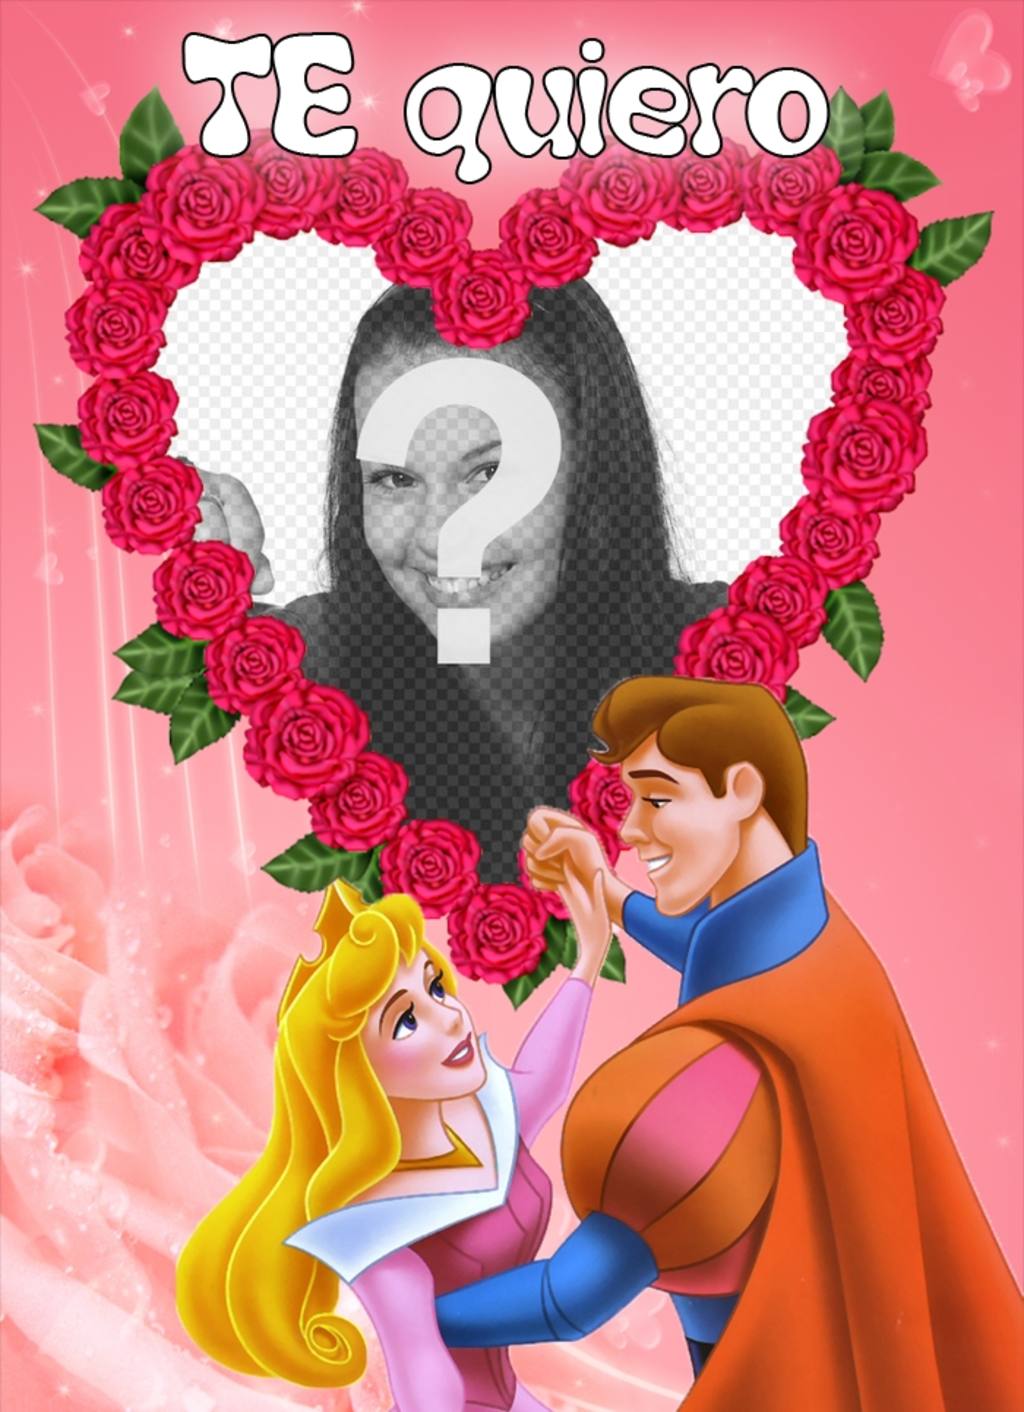 Quadro para colocar sua foto, rosas e em forma de coração por um príncipe e uma princesa. Enviá-la como uma surpresa para o Dia dos..